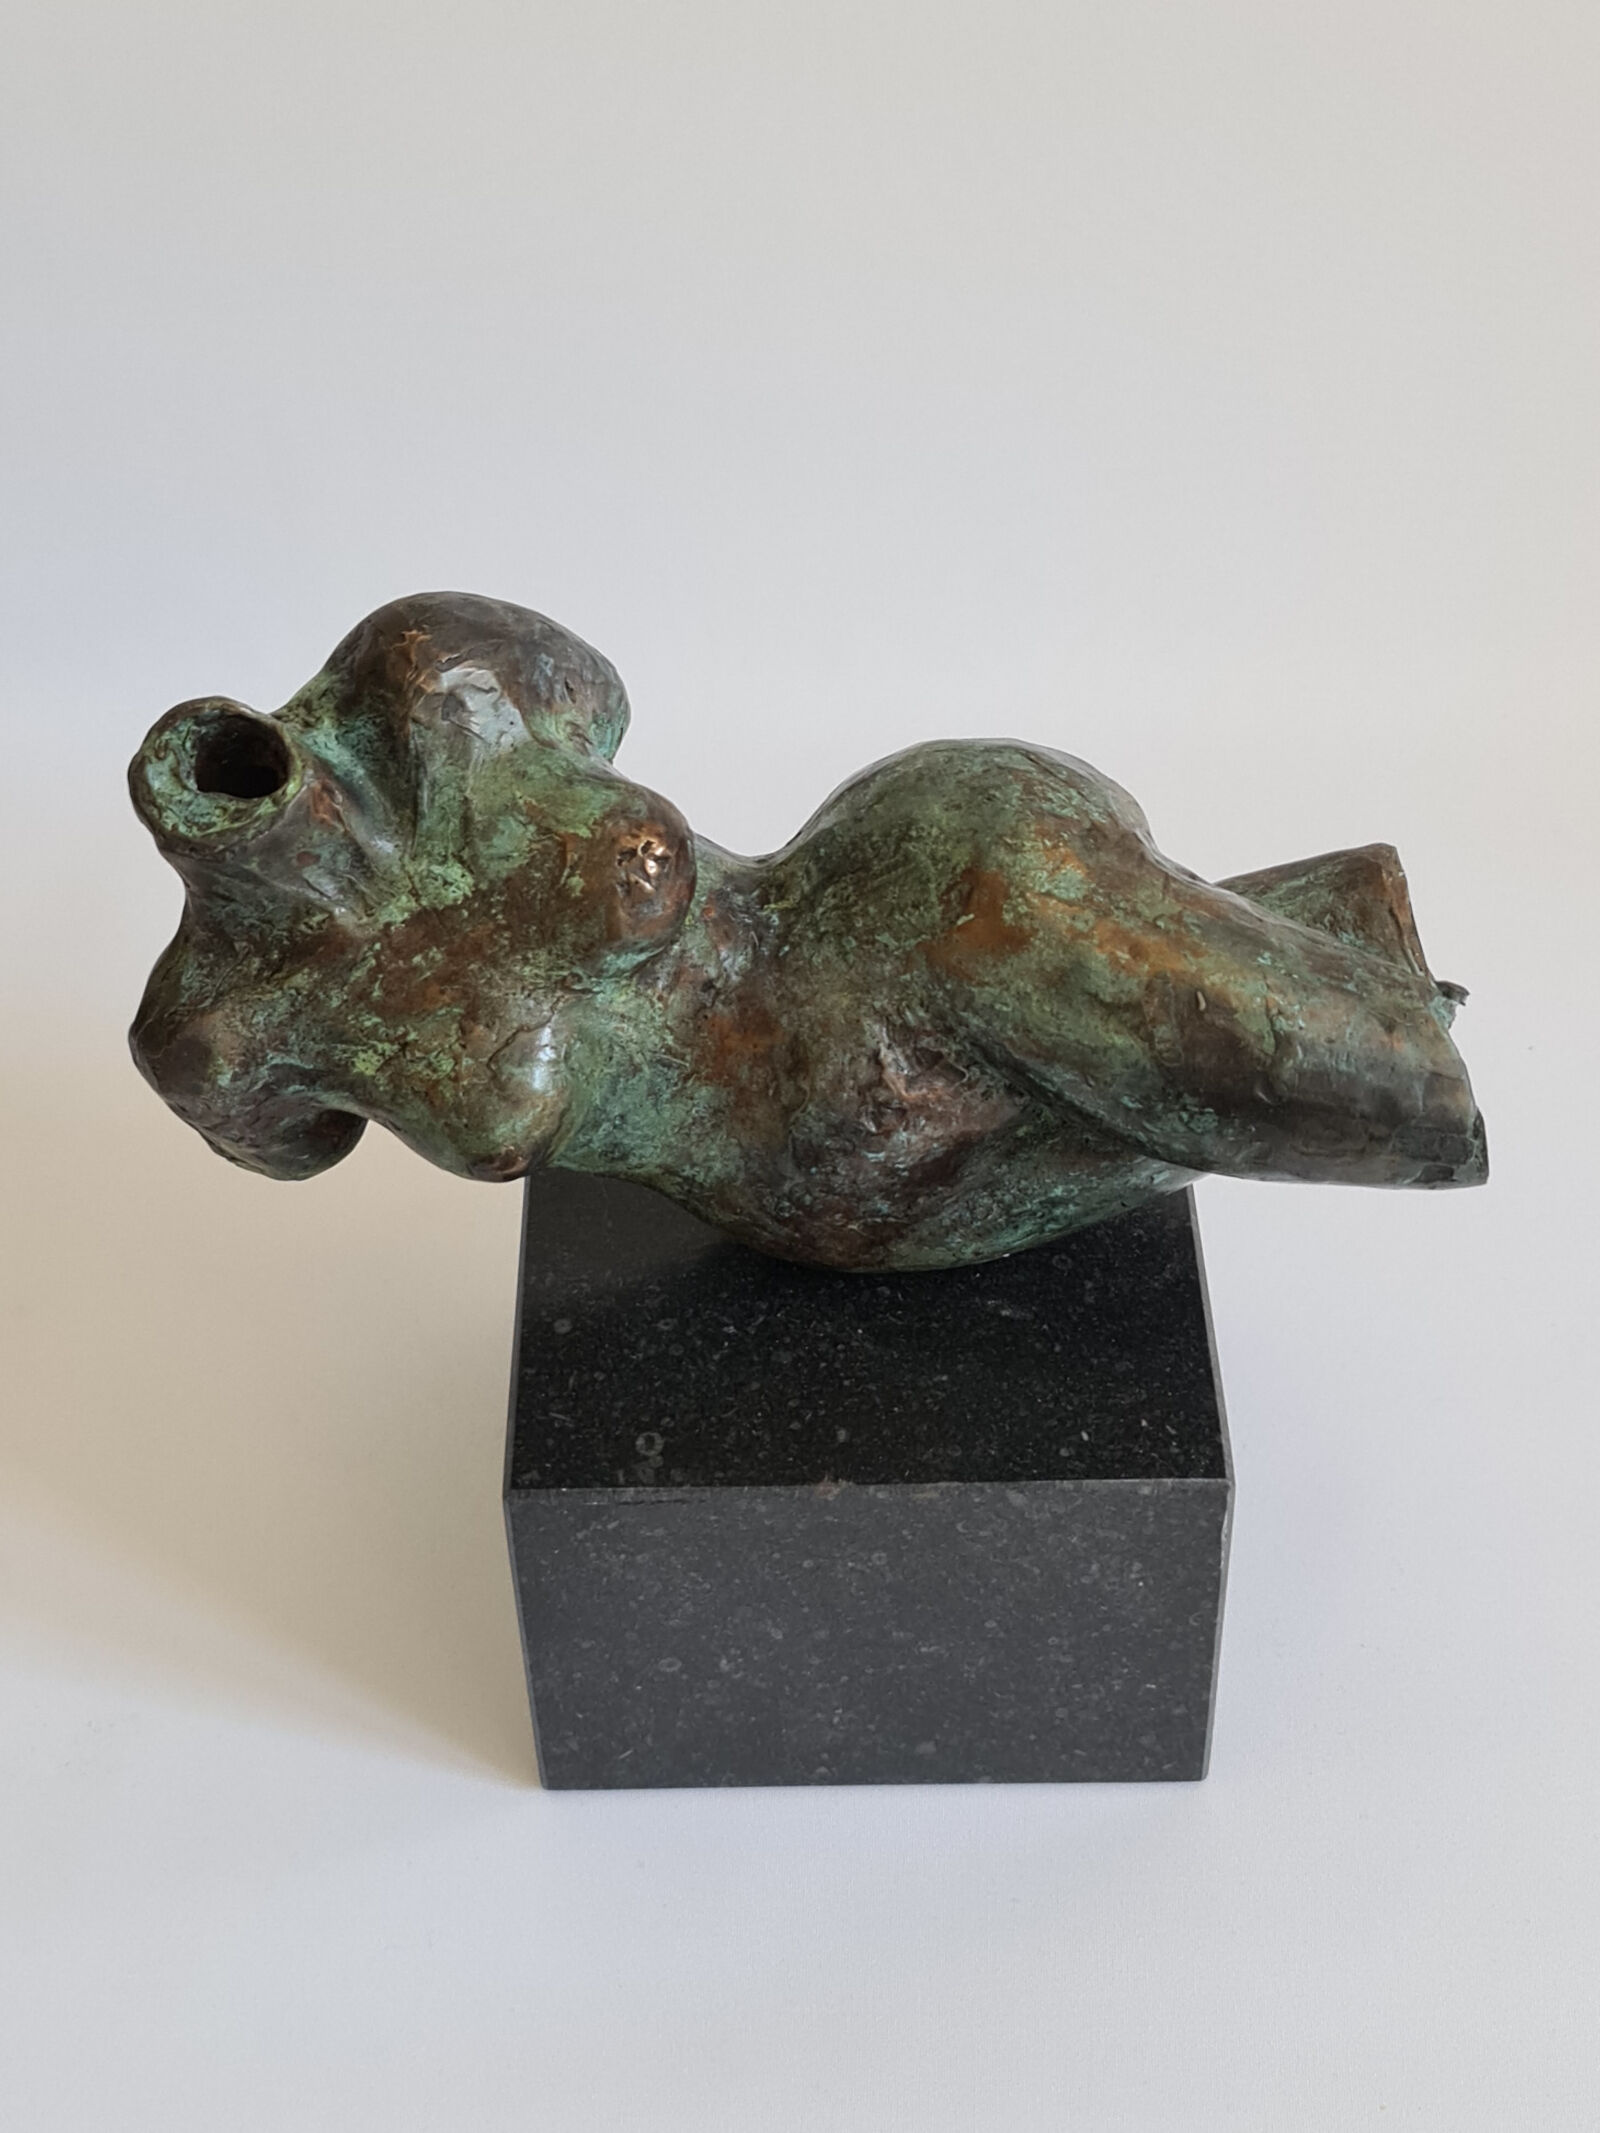 Skulptur "Liegender Torso" (2021)